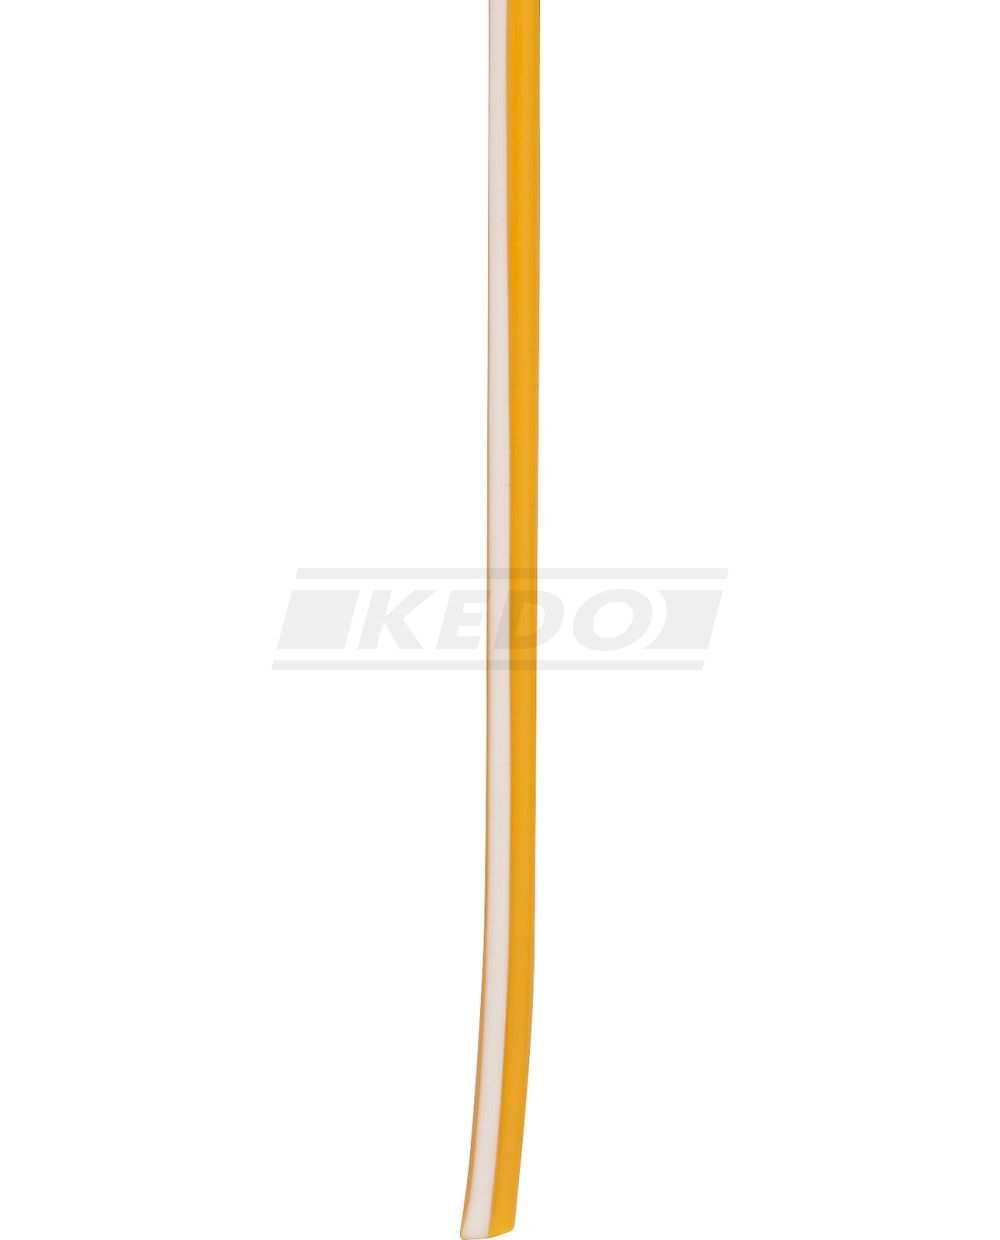 KABEL, 1 Meter 0.75qmm schwarz-weiß (schwarzes Kabel mit weißem Strich)